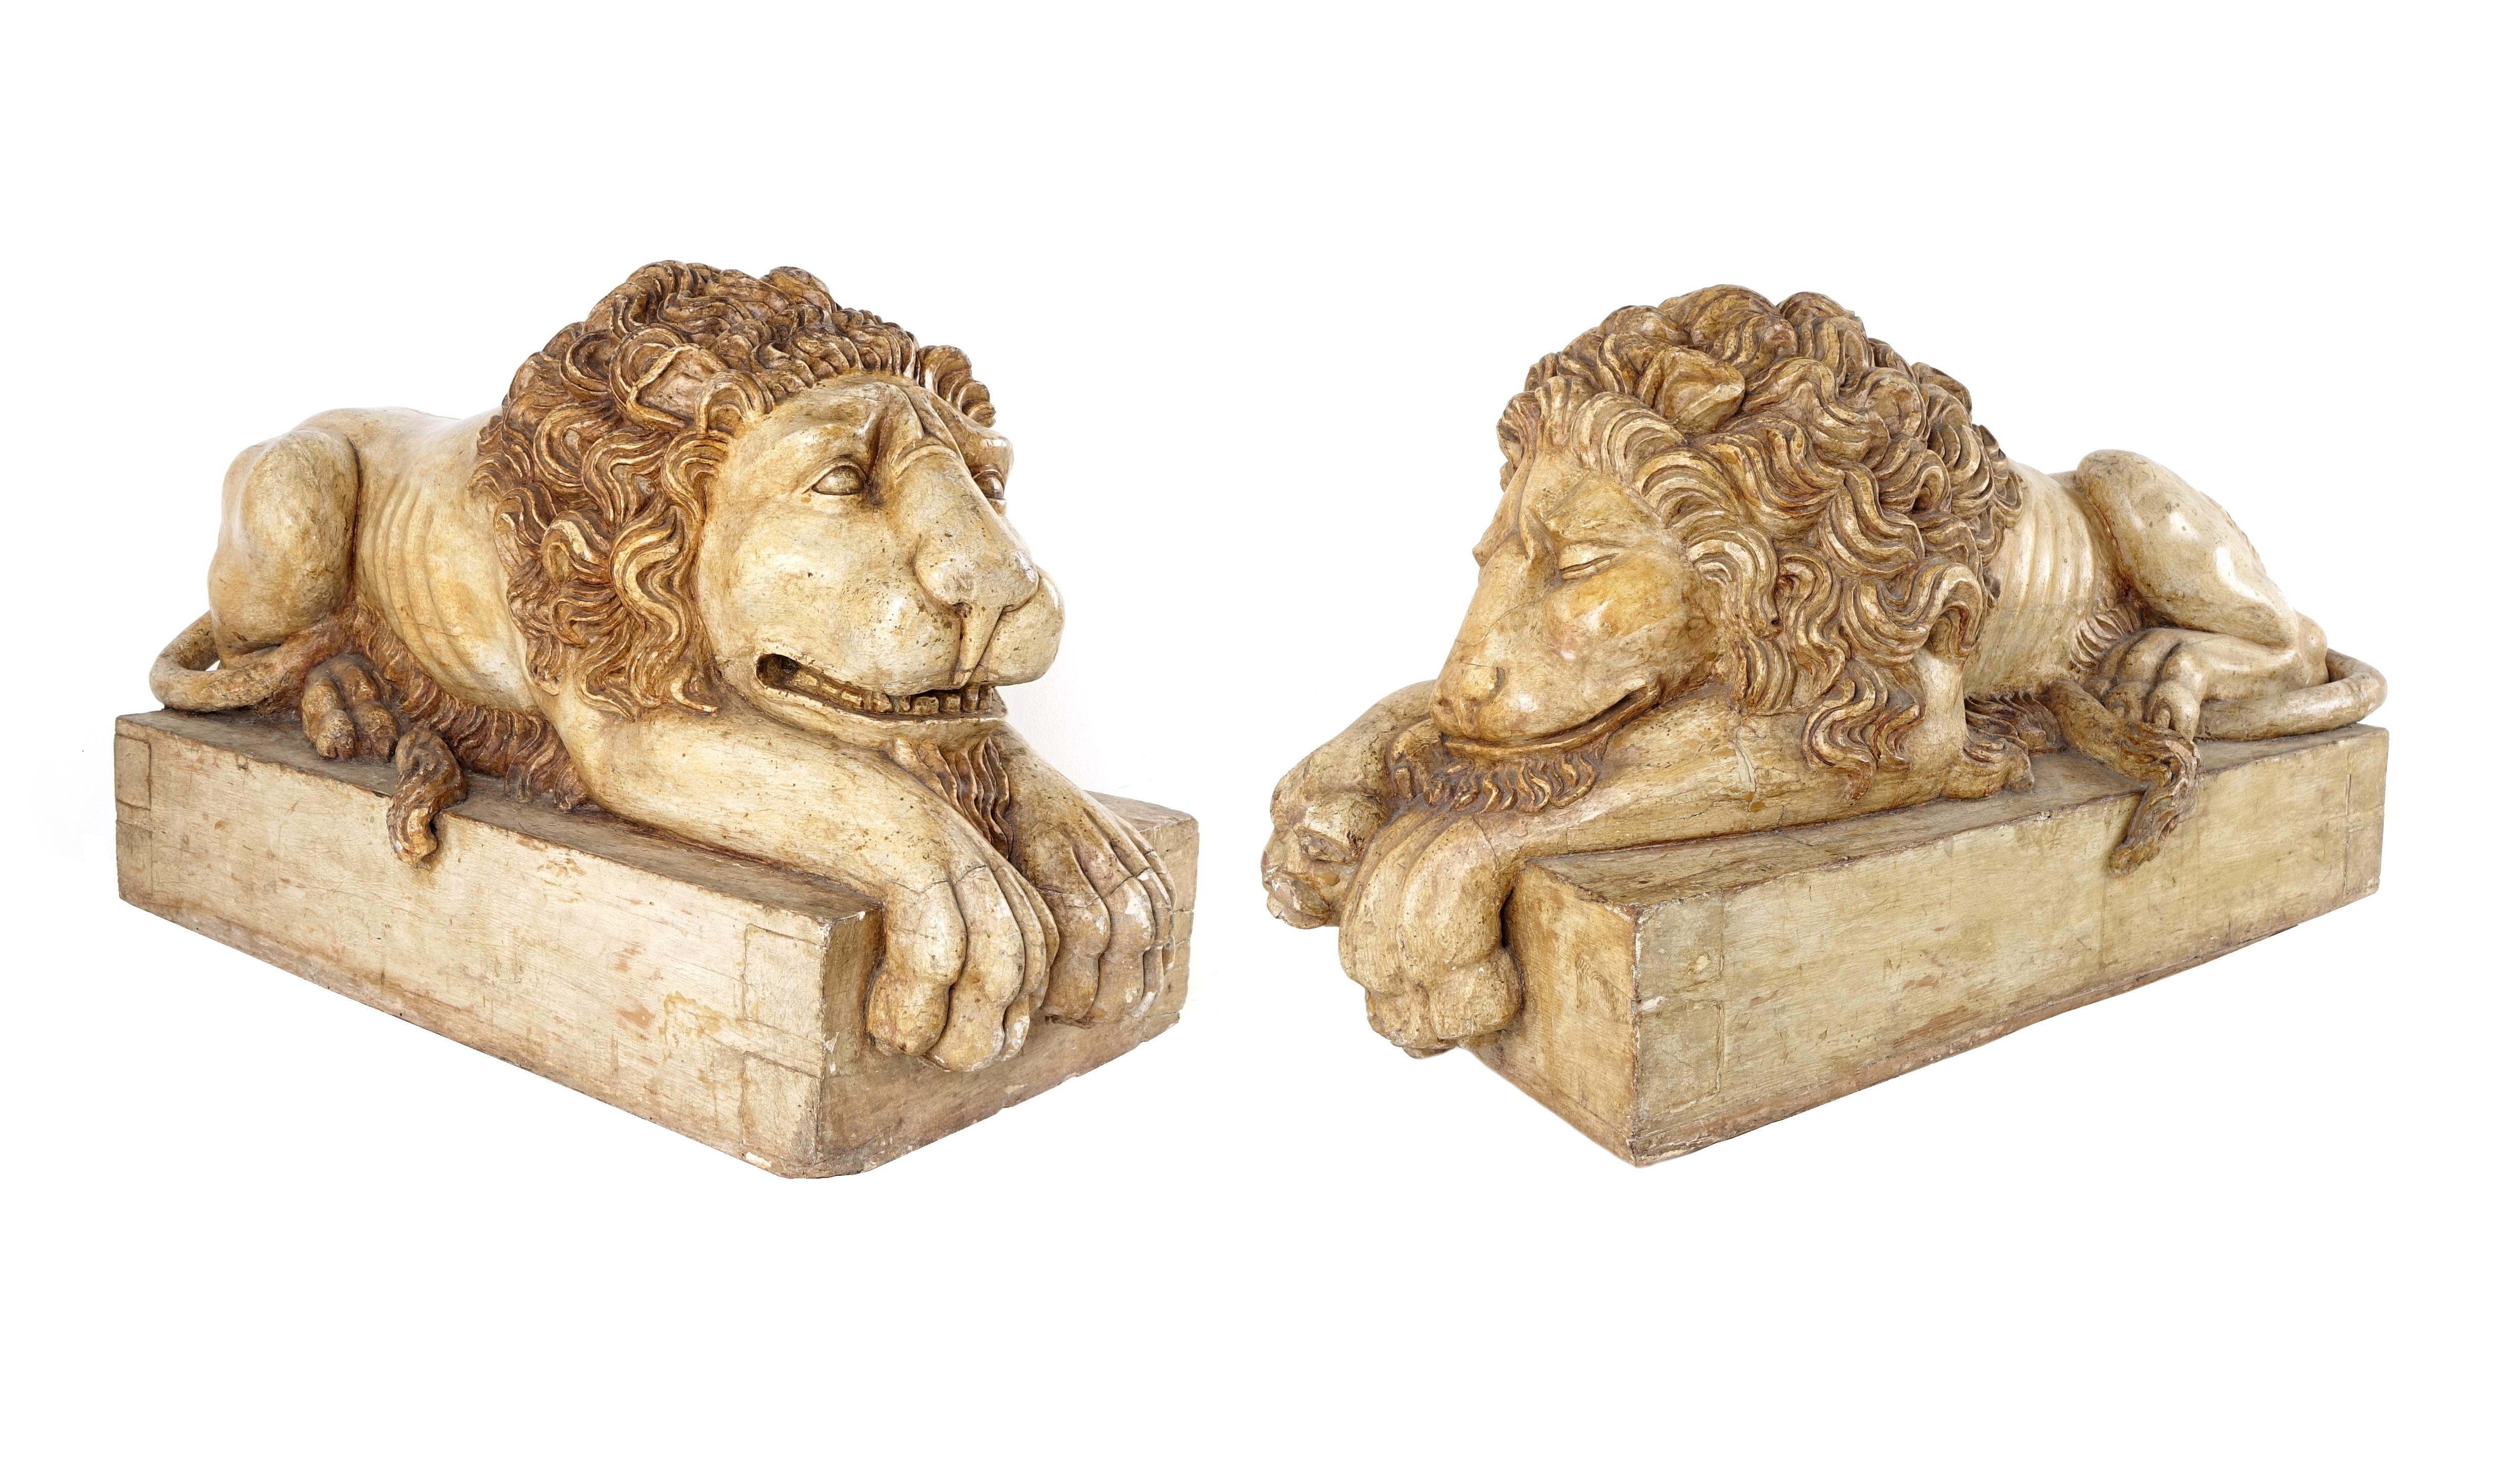 Paire de sculptures représentant des lions endormis.
Le modèle est une invention de Canova.
La légende raconte qu'en 1767 Canova à l'âge de 10 ans fit un lion avec du beurre pour un gâteau, c'était un lion ailé qui eut un grand succès.
Cela s'est